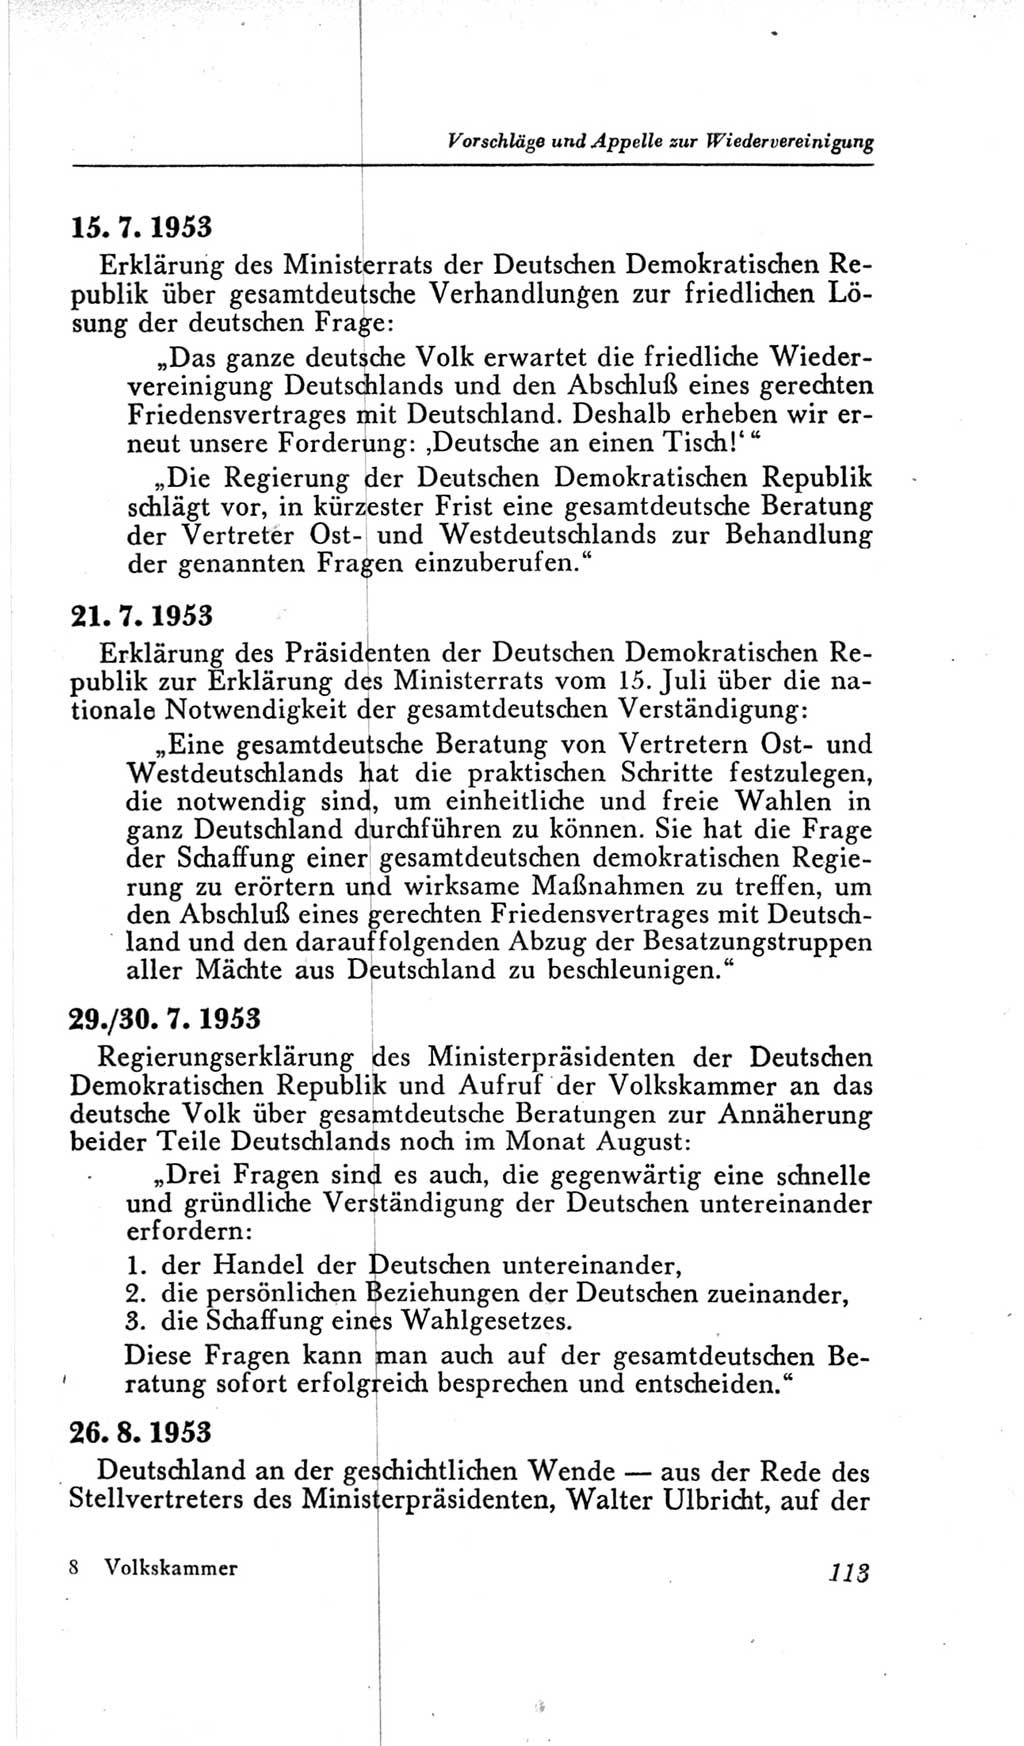 Handbuch der Volkskammer (VK) der Deutschen Demokratischen Republik (DDR), 2. Wahlperiode 1954-1958, Seite 113 (Hdb. VK. DDR, 2. WP. 1954-1958, S. 113)